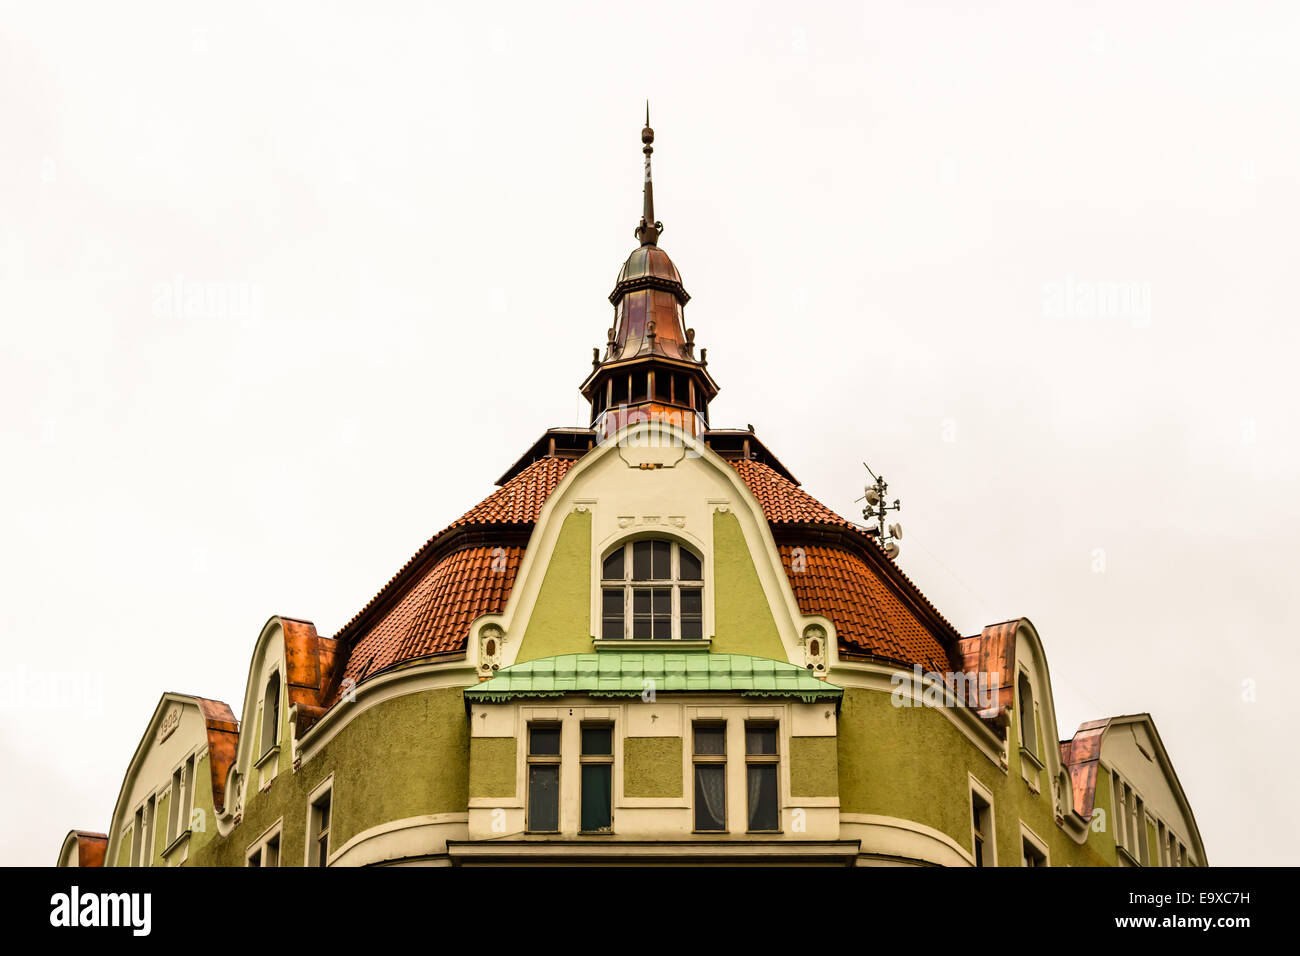 Edifici e case nel centro storico di Praga: verde pareti, tetti rossi, strette finestre. Foto Stock